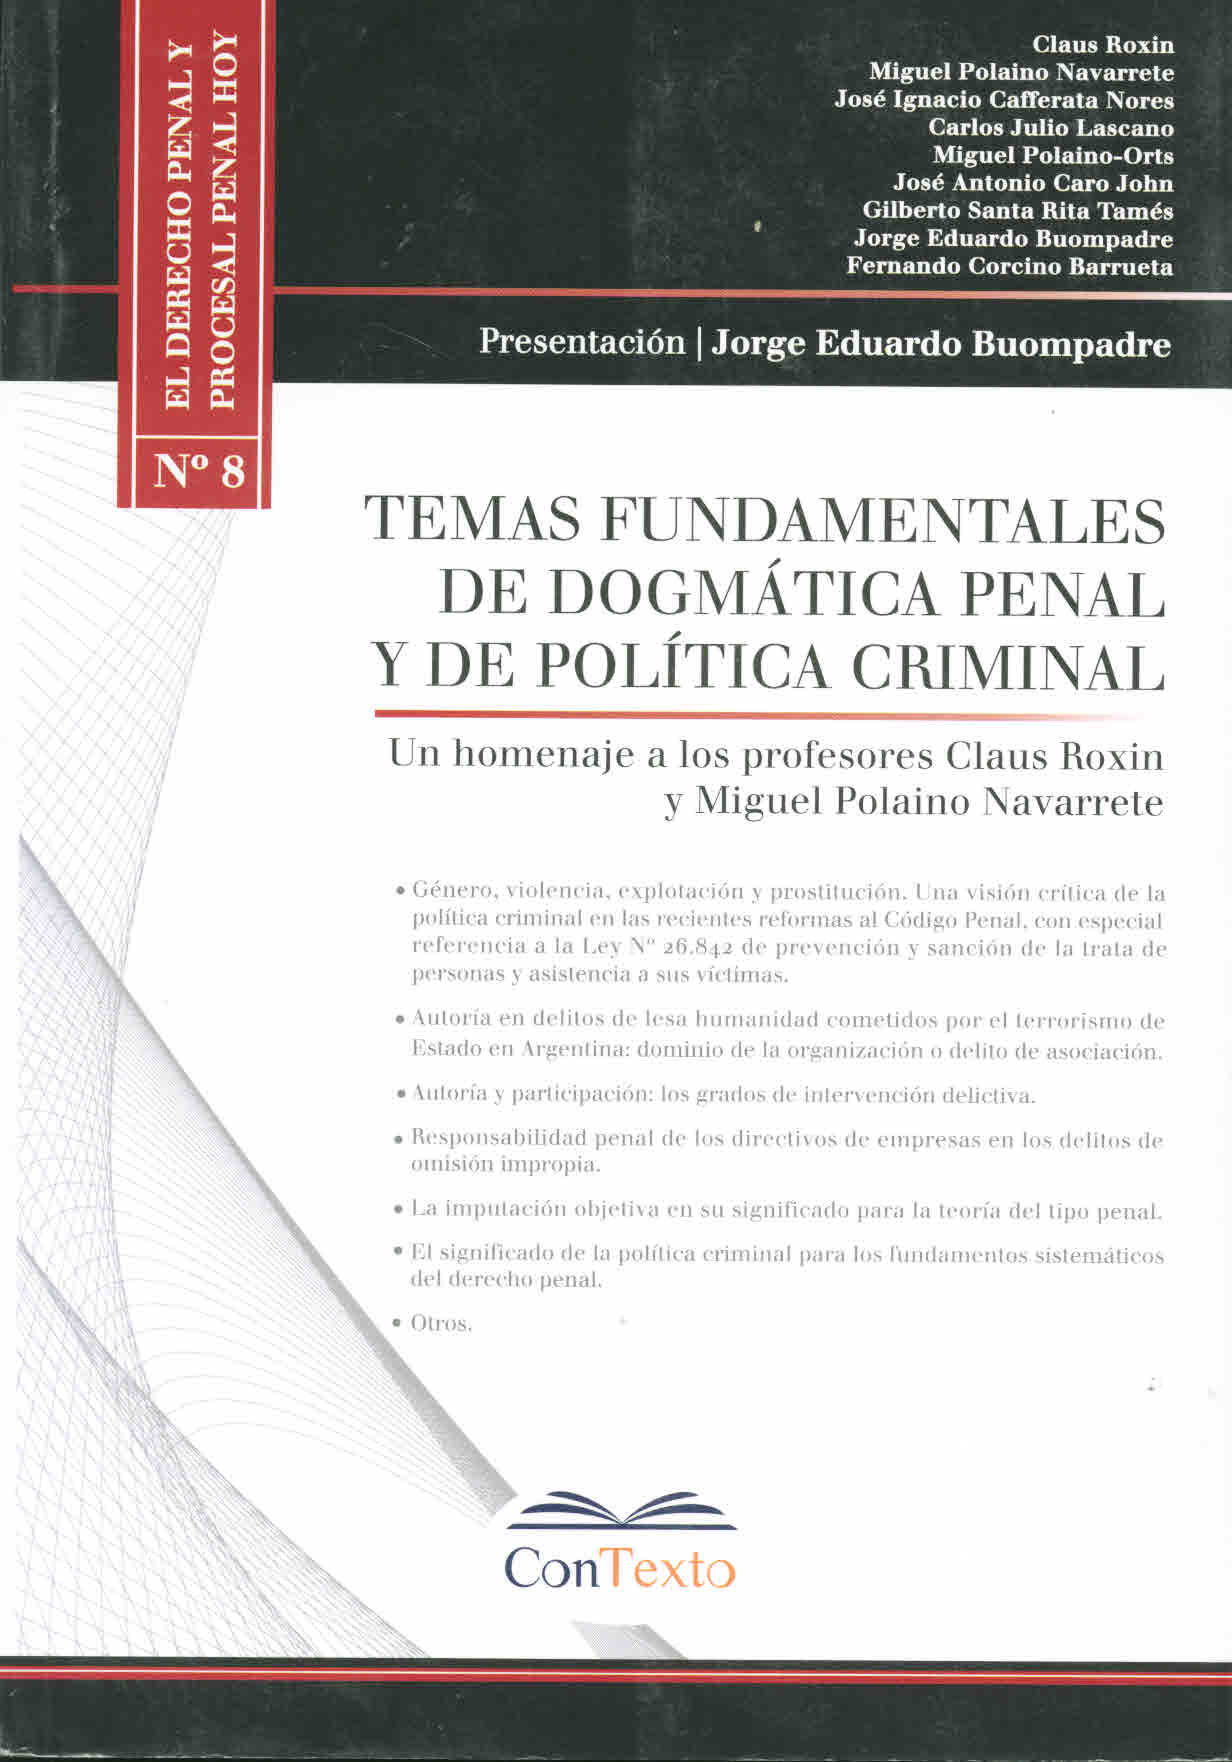 Temas fundamentales de dogmática penal y de política criminal. Homenaje a los profesores Claus Roxin y Miguel Polaino Navarrete